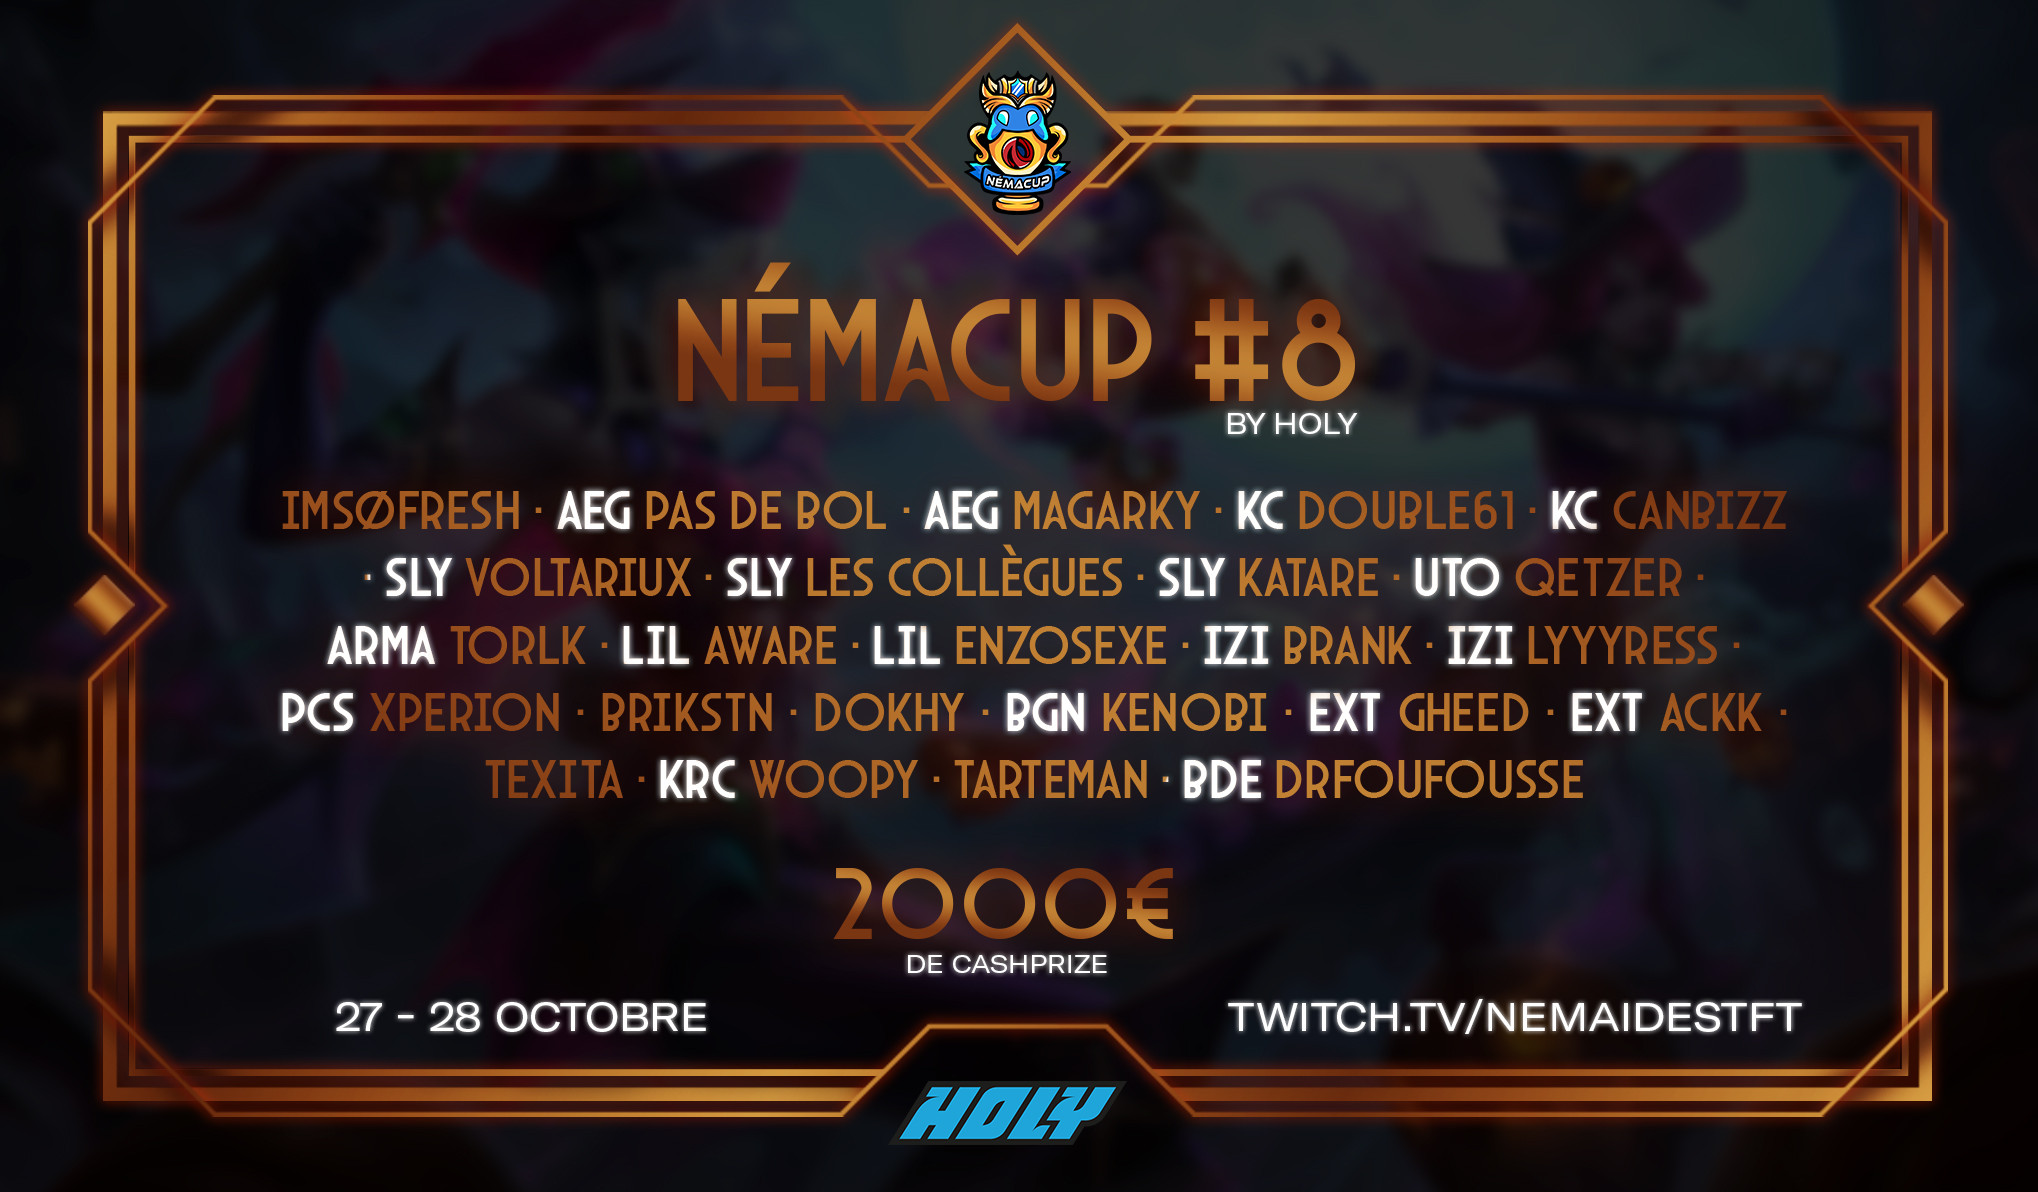 NémaCup 8 sur TFT, qui sont les joueurs invités au tournoi ?